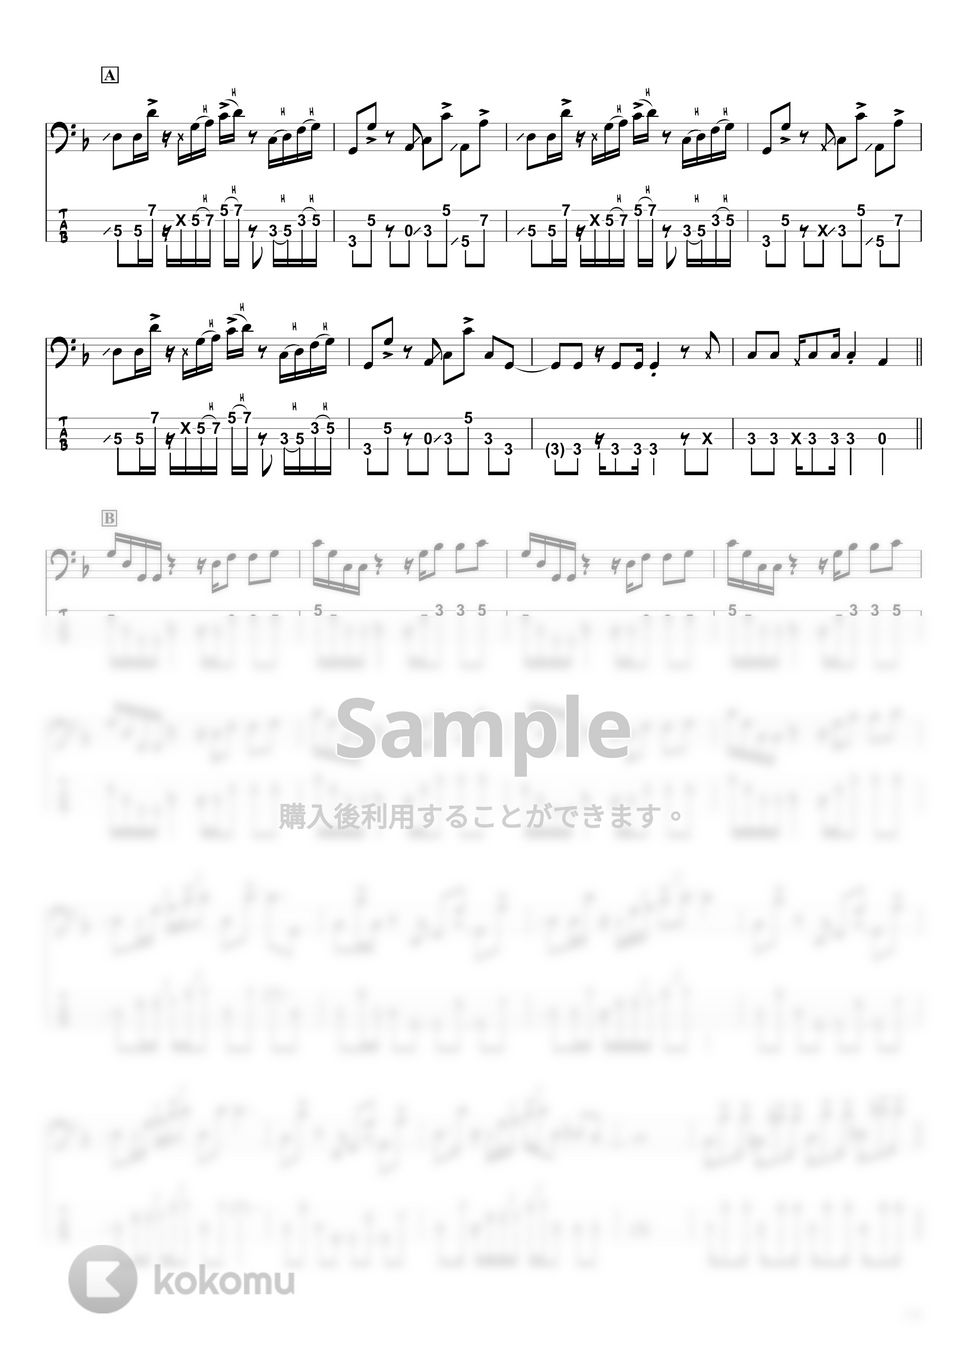 山下 達郎 - BOMBER (ベースTAB譜☆4弦ベース対応) by swbass